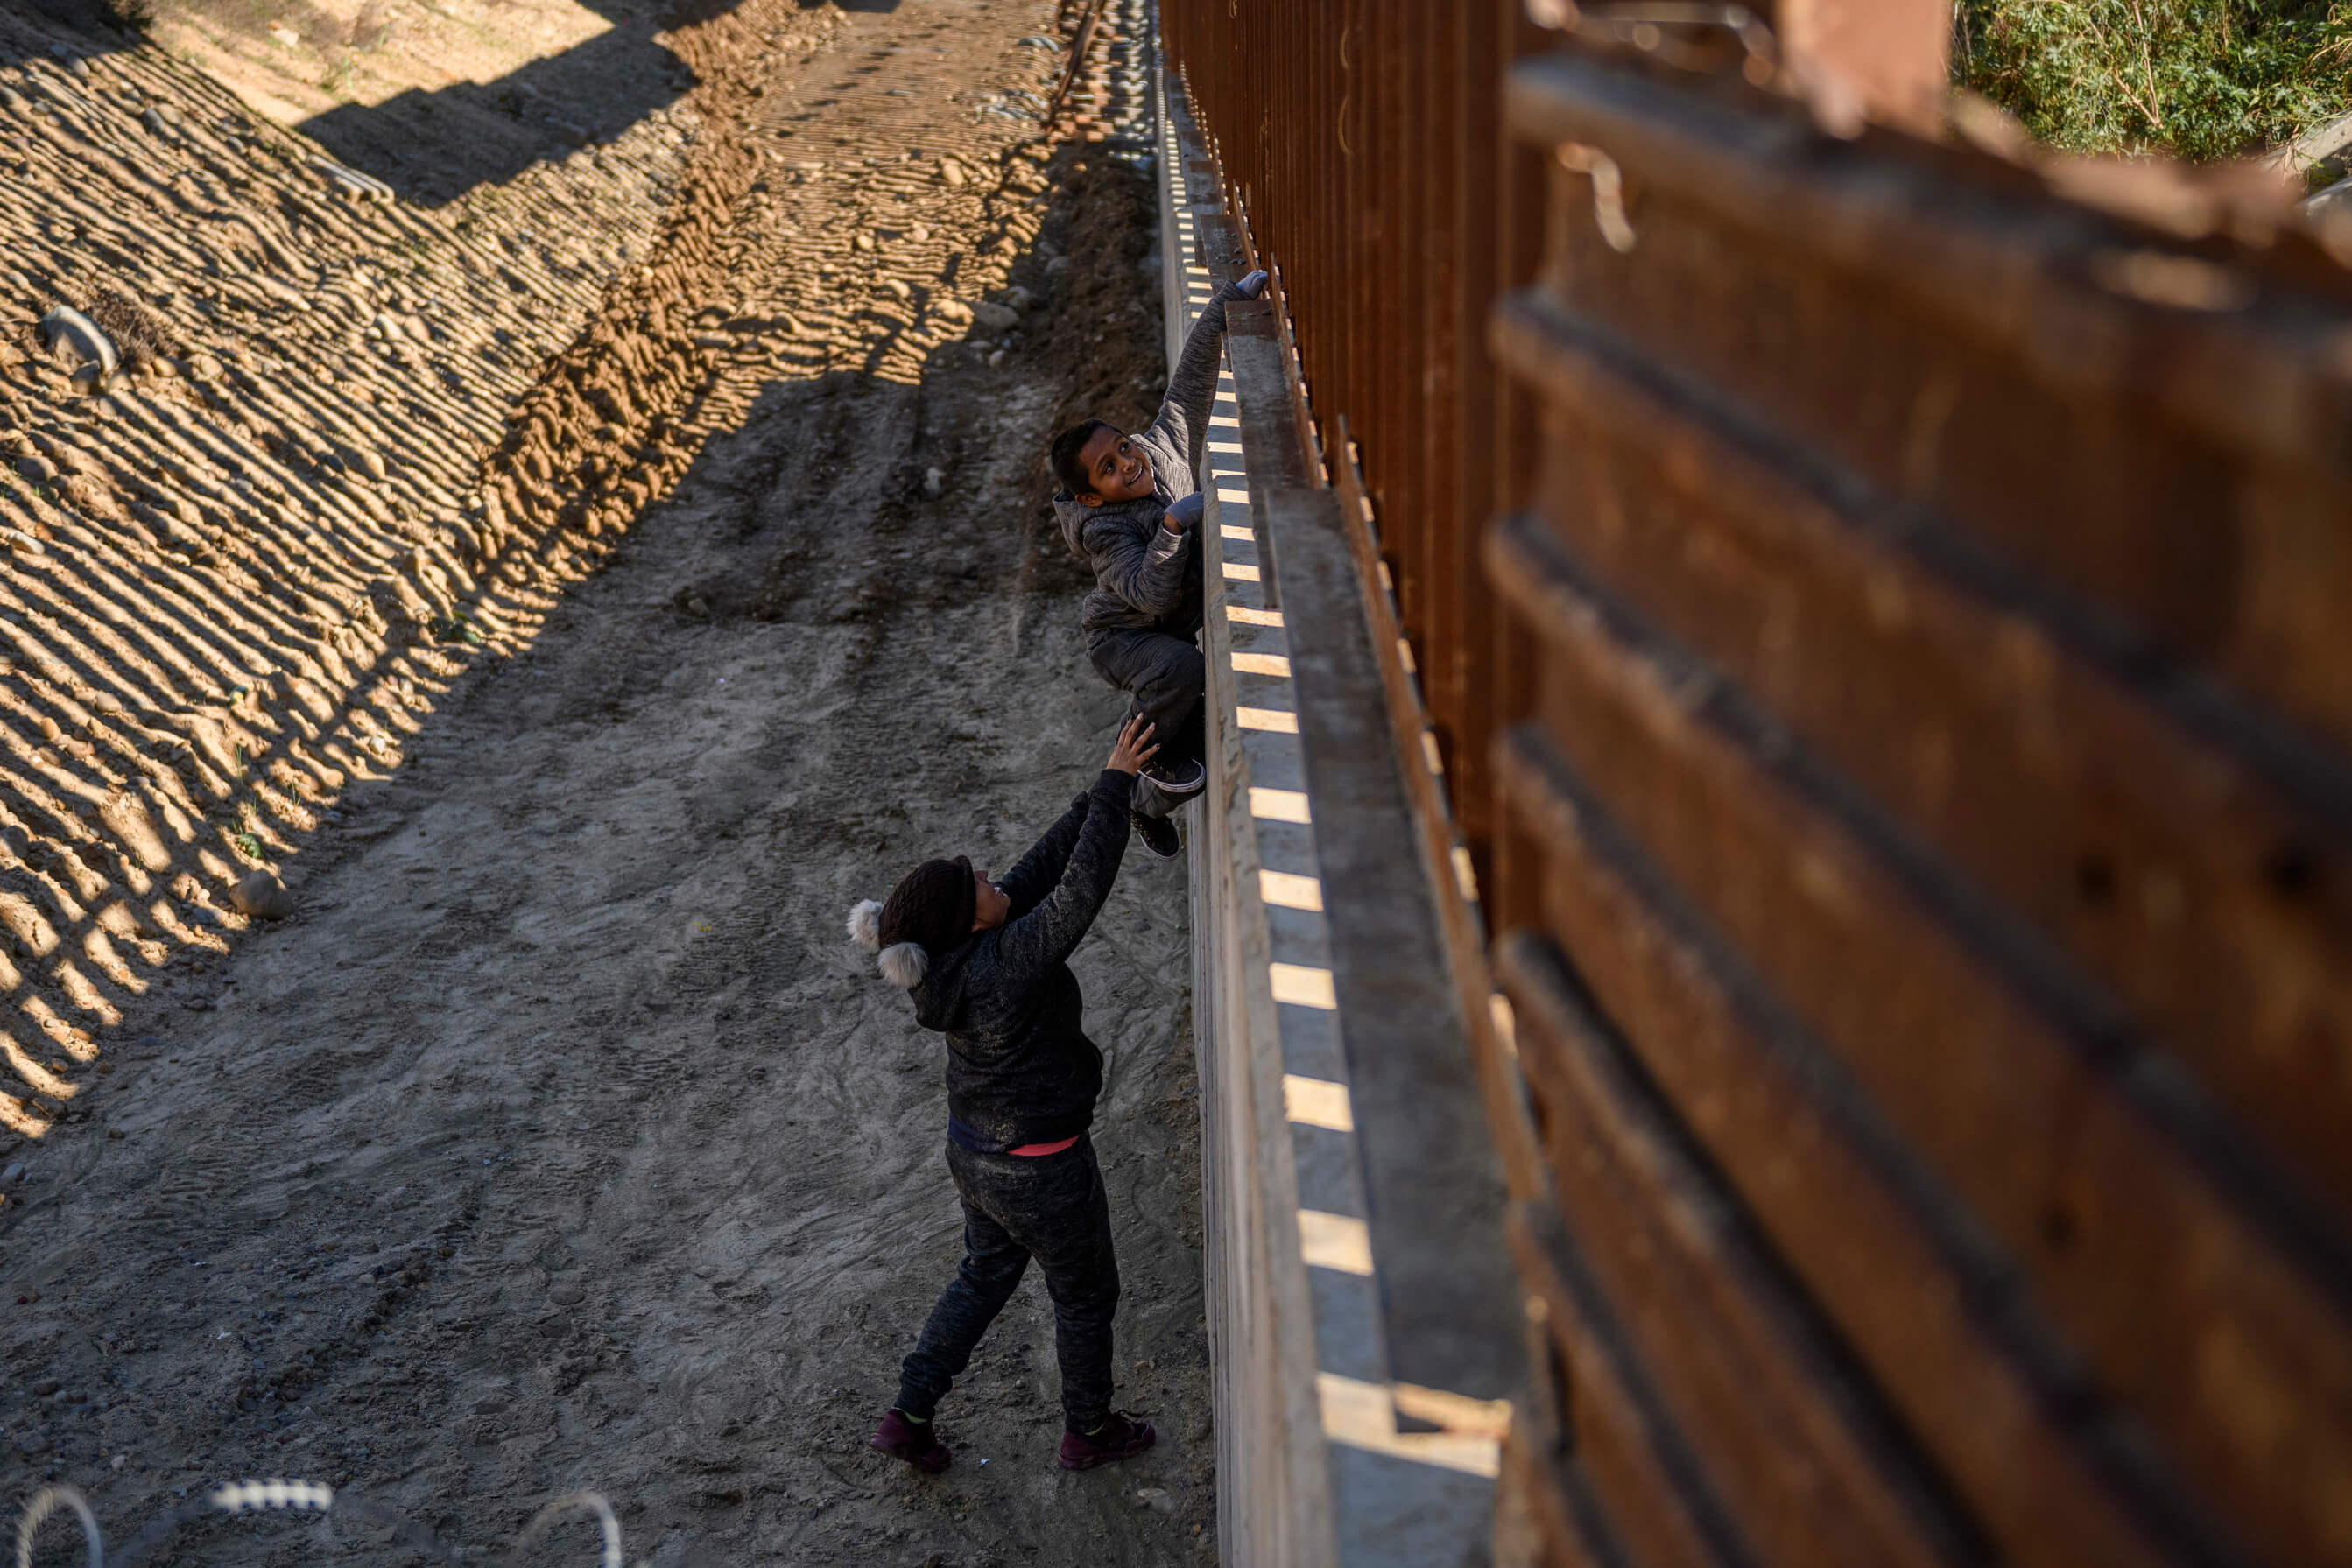 Trump exige a demócratas fondos para muro fronterizo